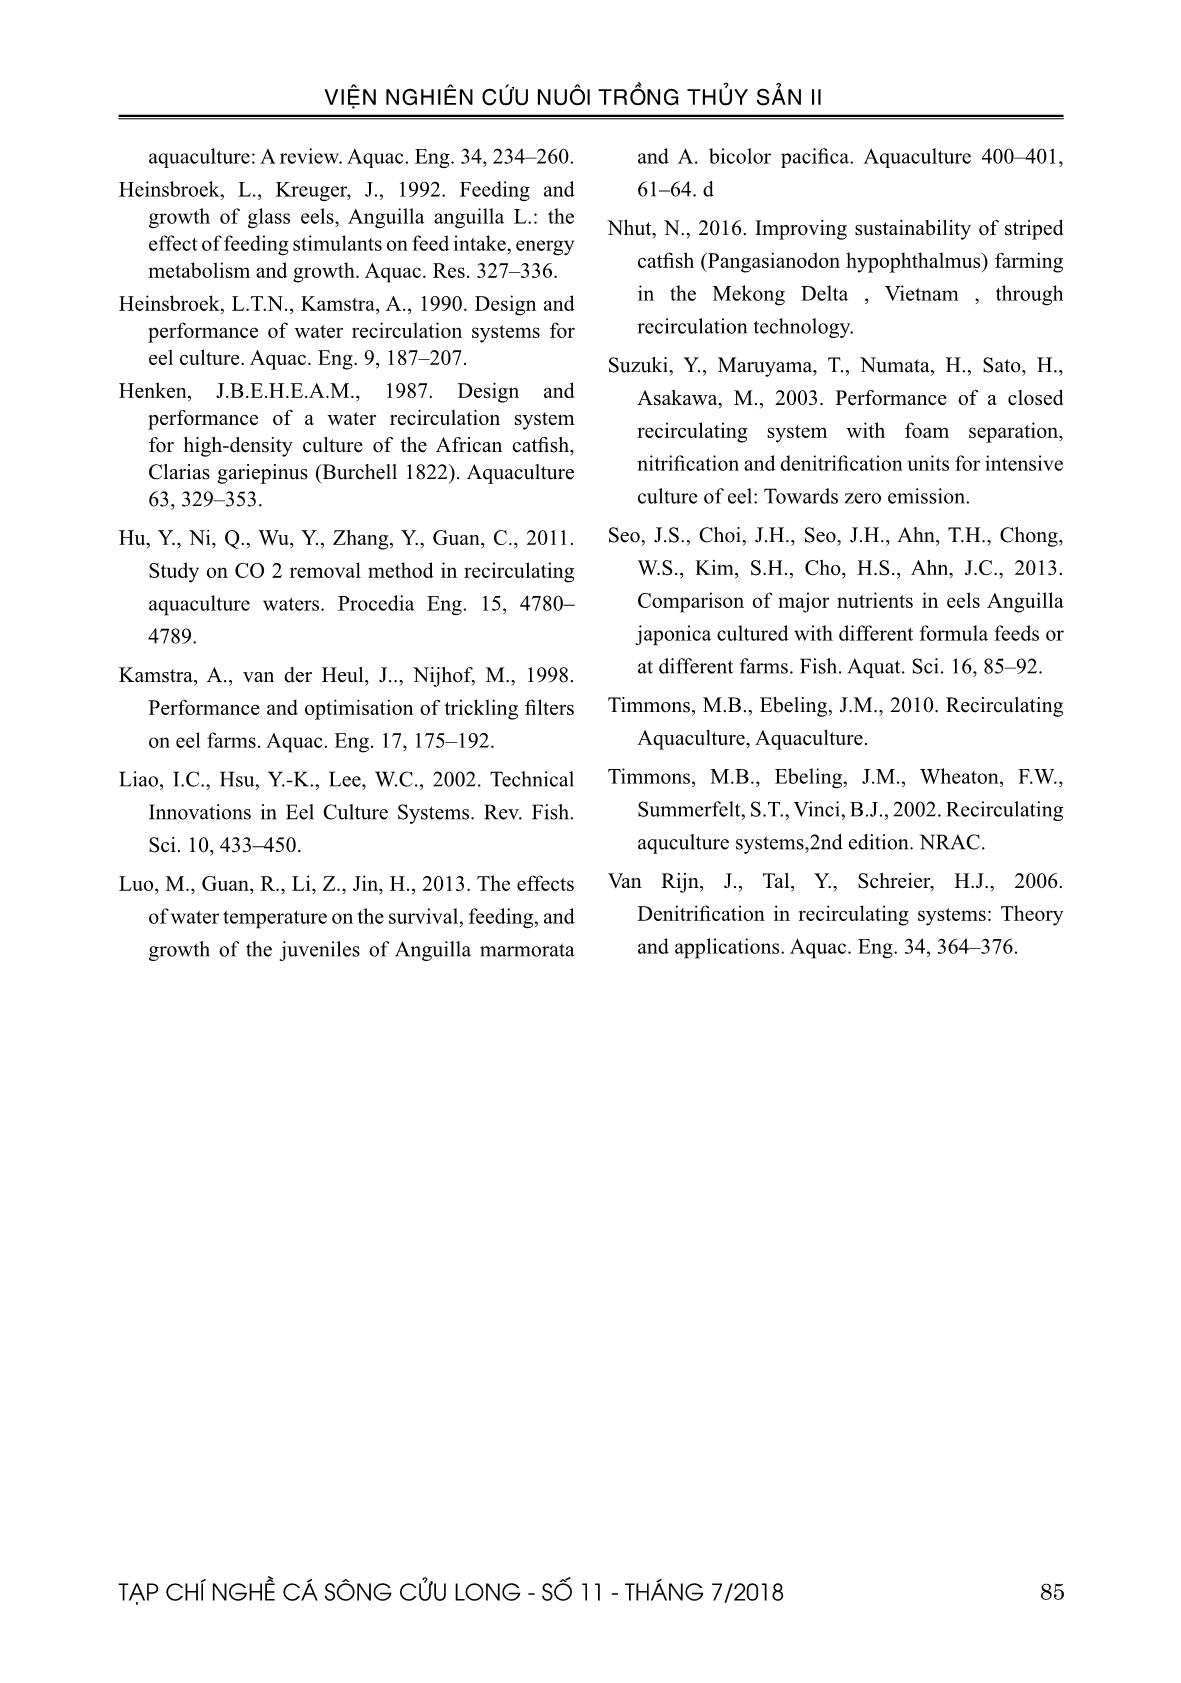 Ứng dụng công nghệ tuần hoàn để nuôi cá chình bông (Anguilla marmorata Quoy & Gaimard, 1824) trang 9